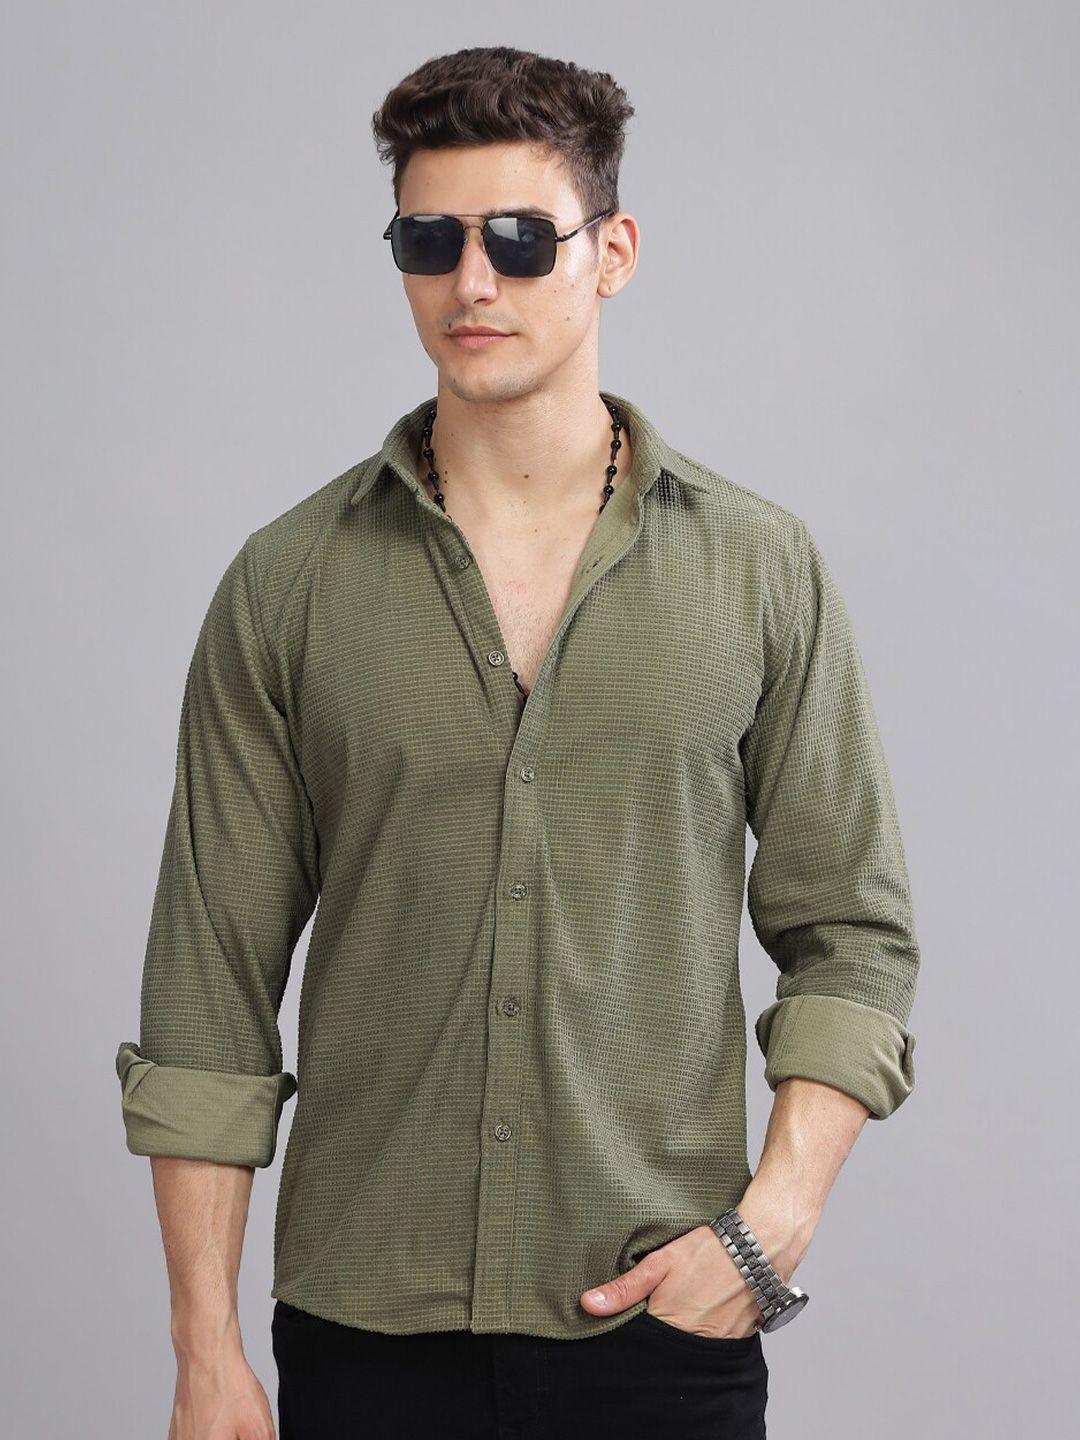 paul street standard slim fit textured wrinkle free corduroy casual shirt